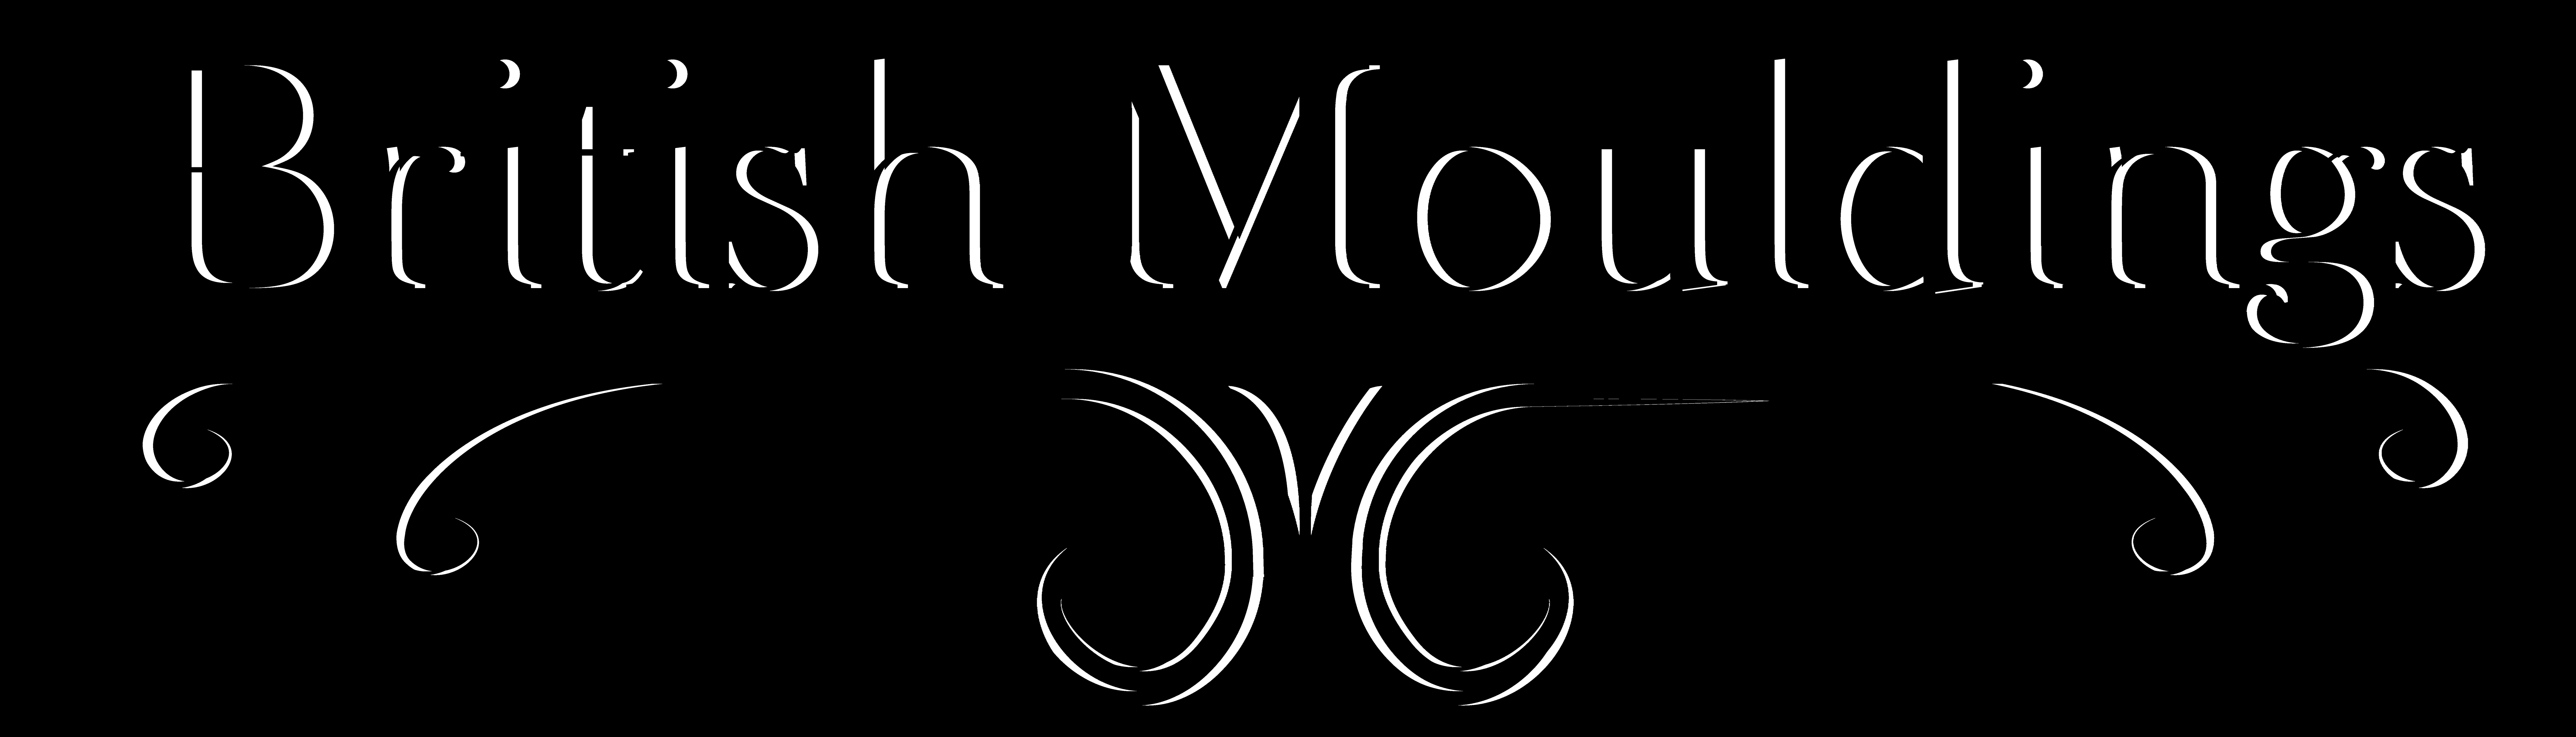 British Mouldings logo